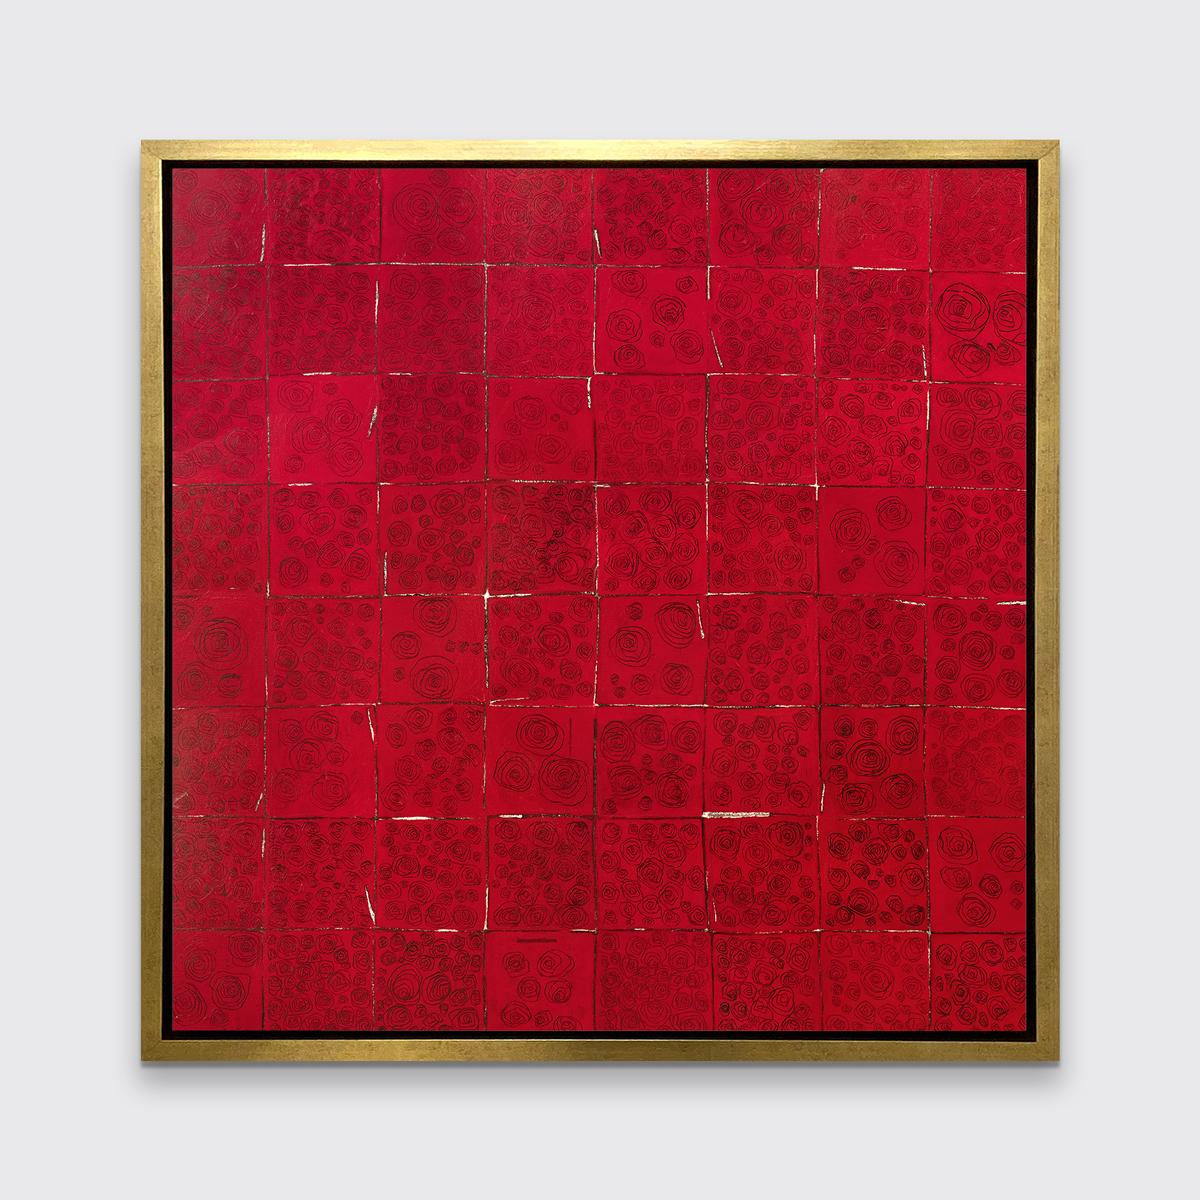 Dieser abstrakte Druck in limitierter Auflage von Sofie Swann zeigt eine quadratische Musterkomposition in tiefroter Farbe mit abstrahierten, dünnen schwarzen Linienzeichnungen von Rosen in jedem Quadrat. Die quadratischen Umrisse sind meist dunkel,